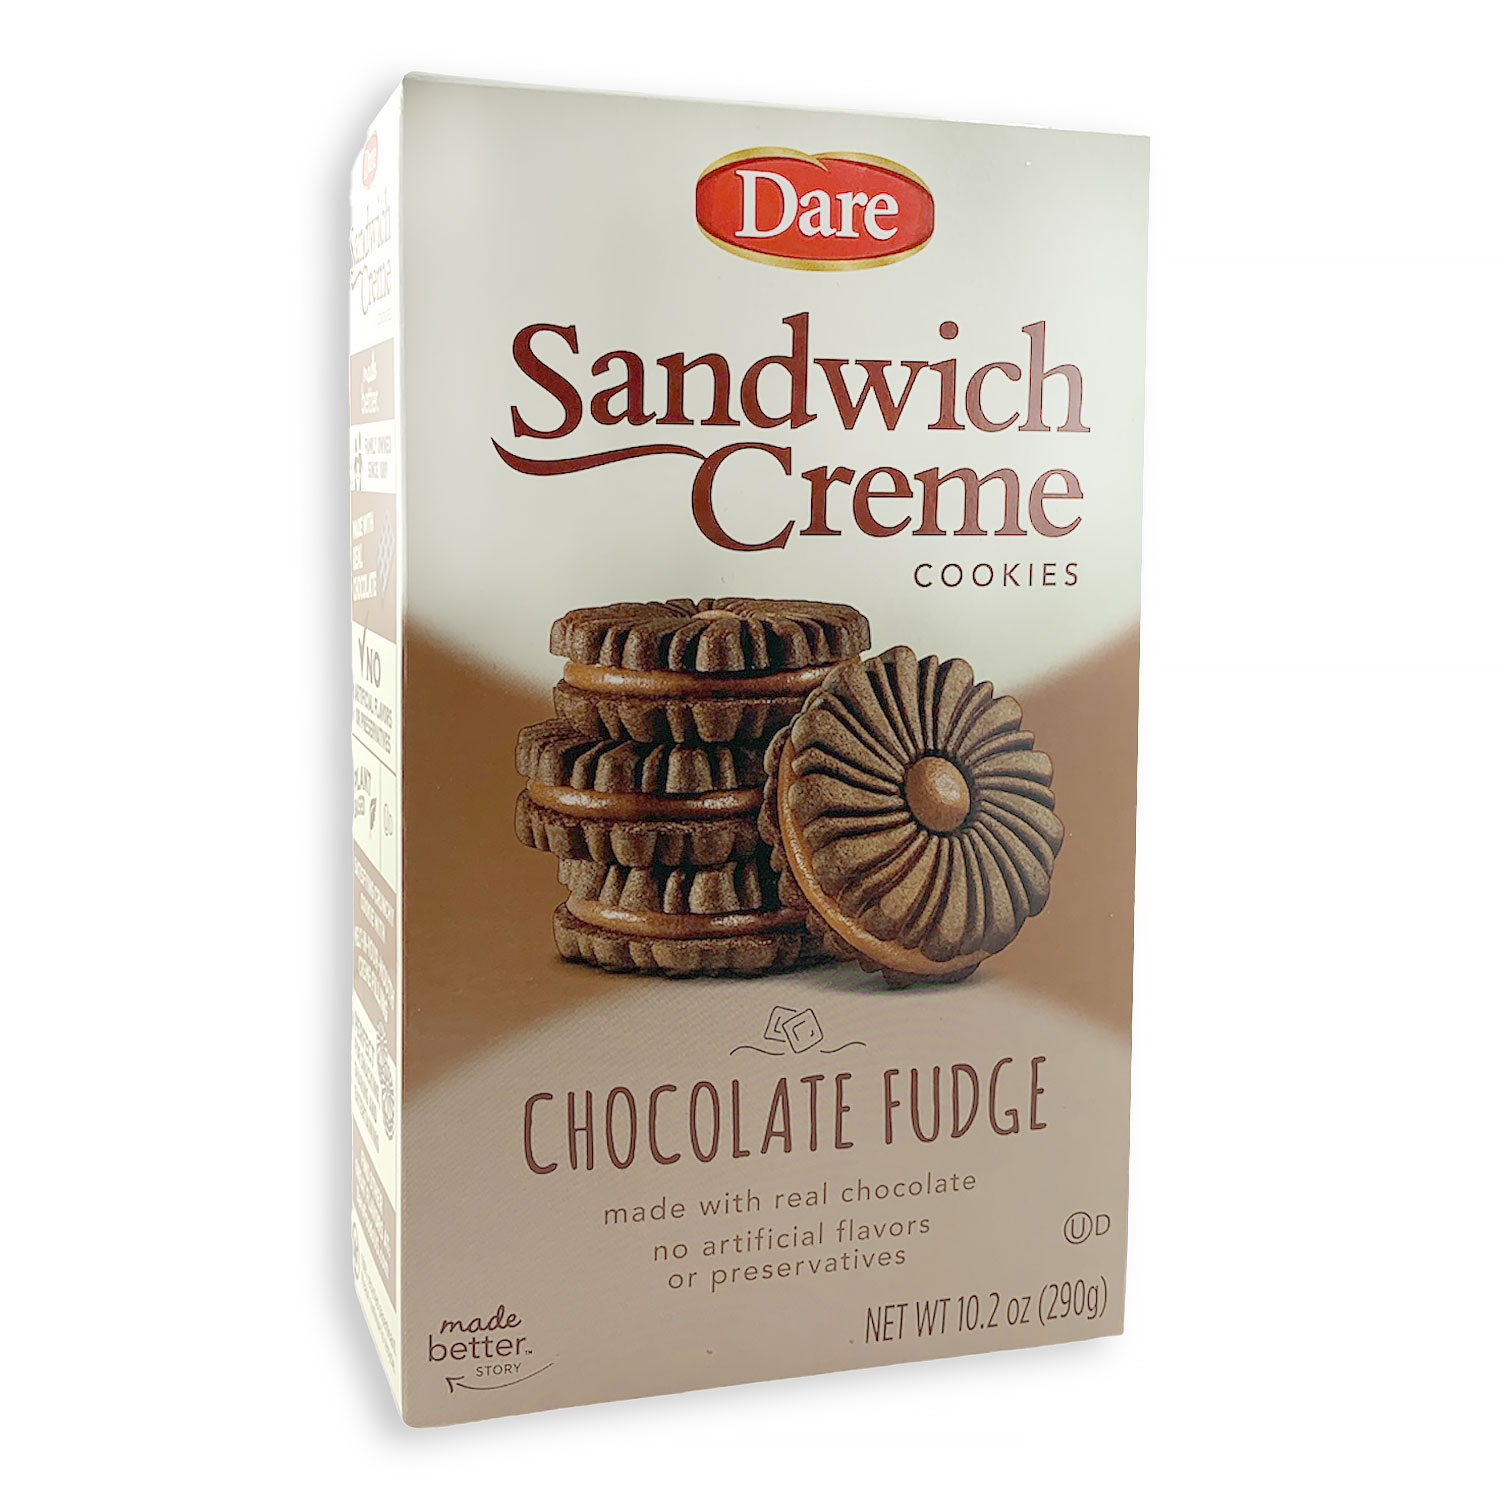 Fudge Chocolate Sandwich Crème Cookies